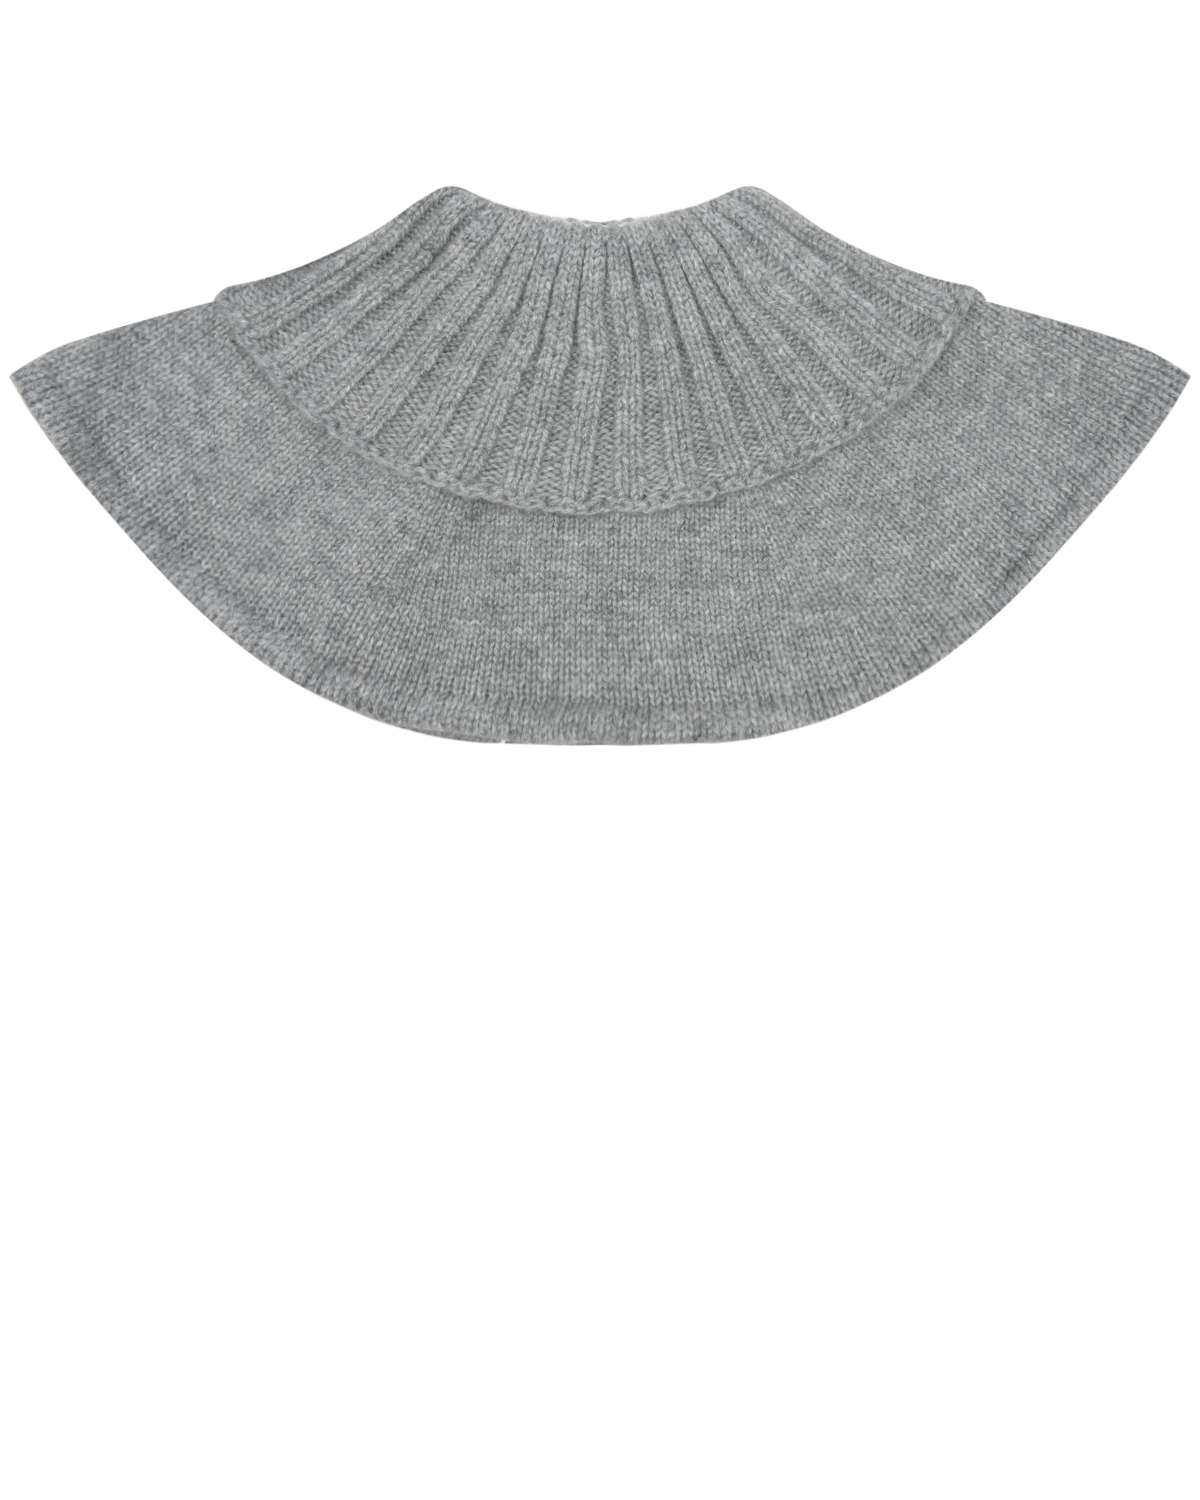 Серый шарф-горло из кашемира Chobi детский, размер unica